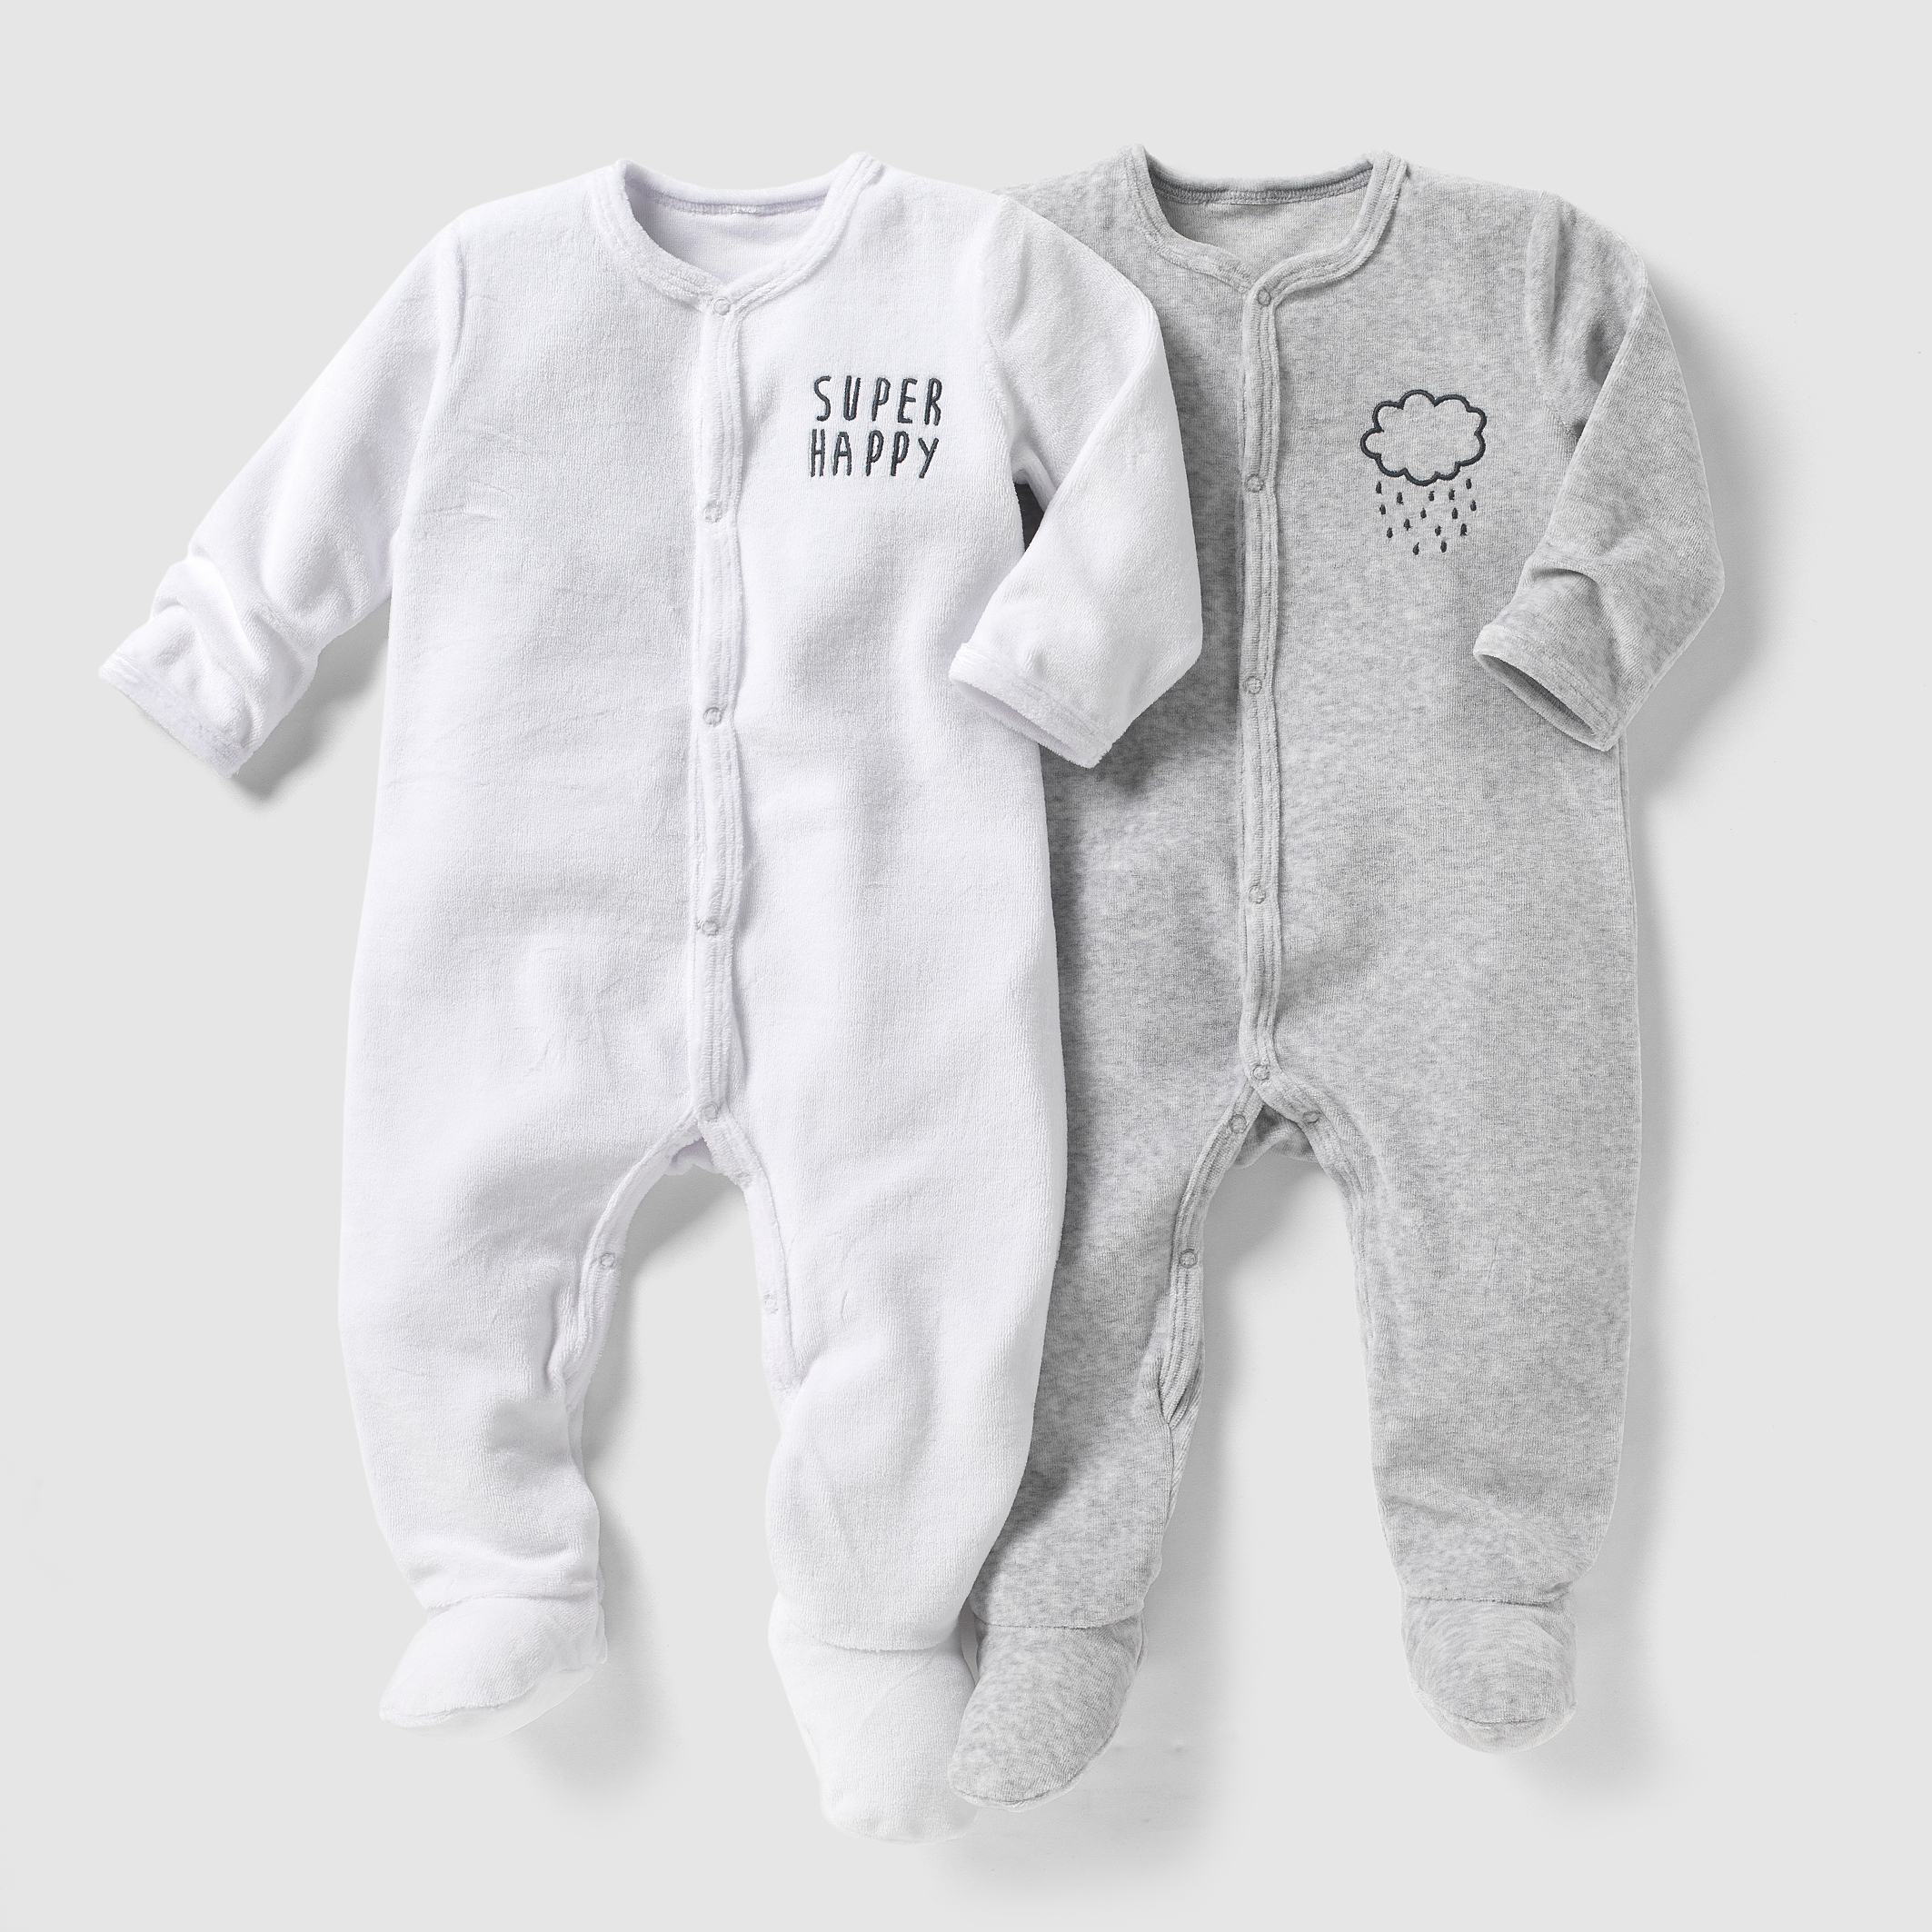 Детская одежда для новорожденных интернет магазин